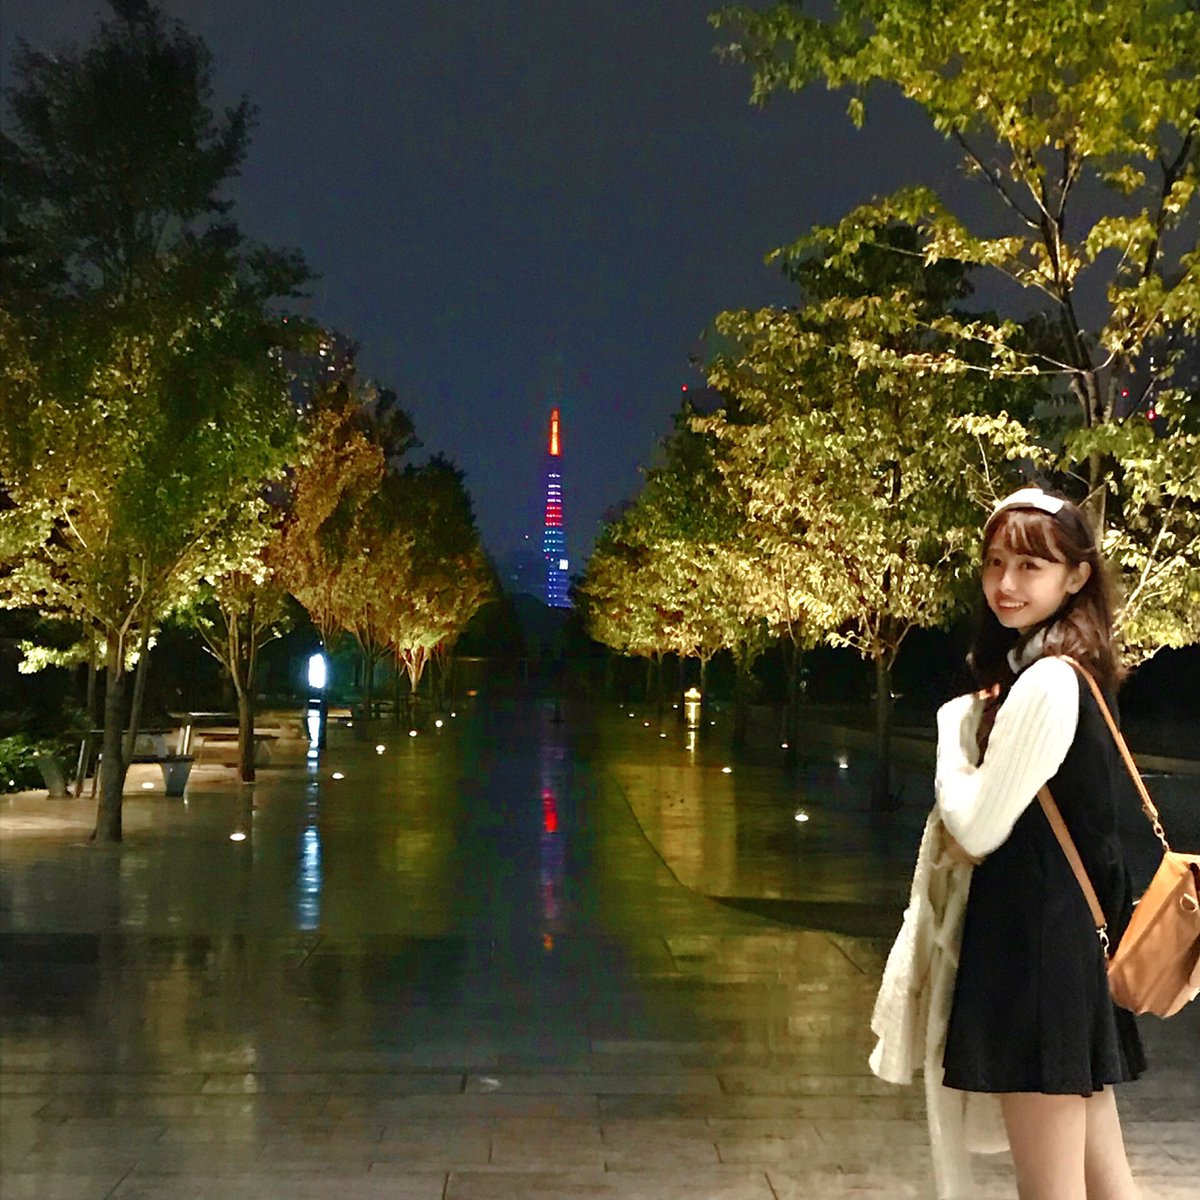 東京タワー🗼綺麗すぎ✨#東京タワー #イルミネーション https://t.co/fPz3nOLgiC